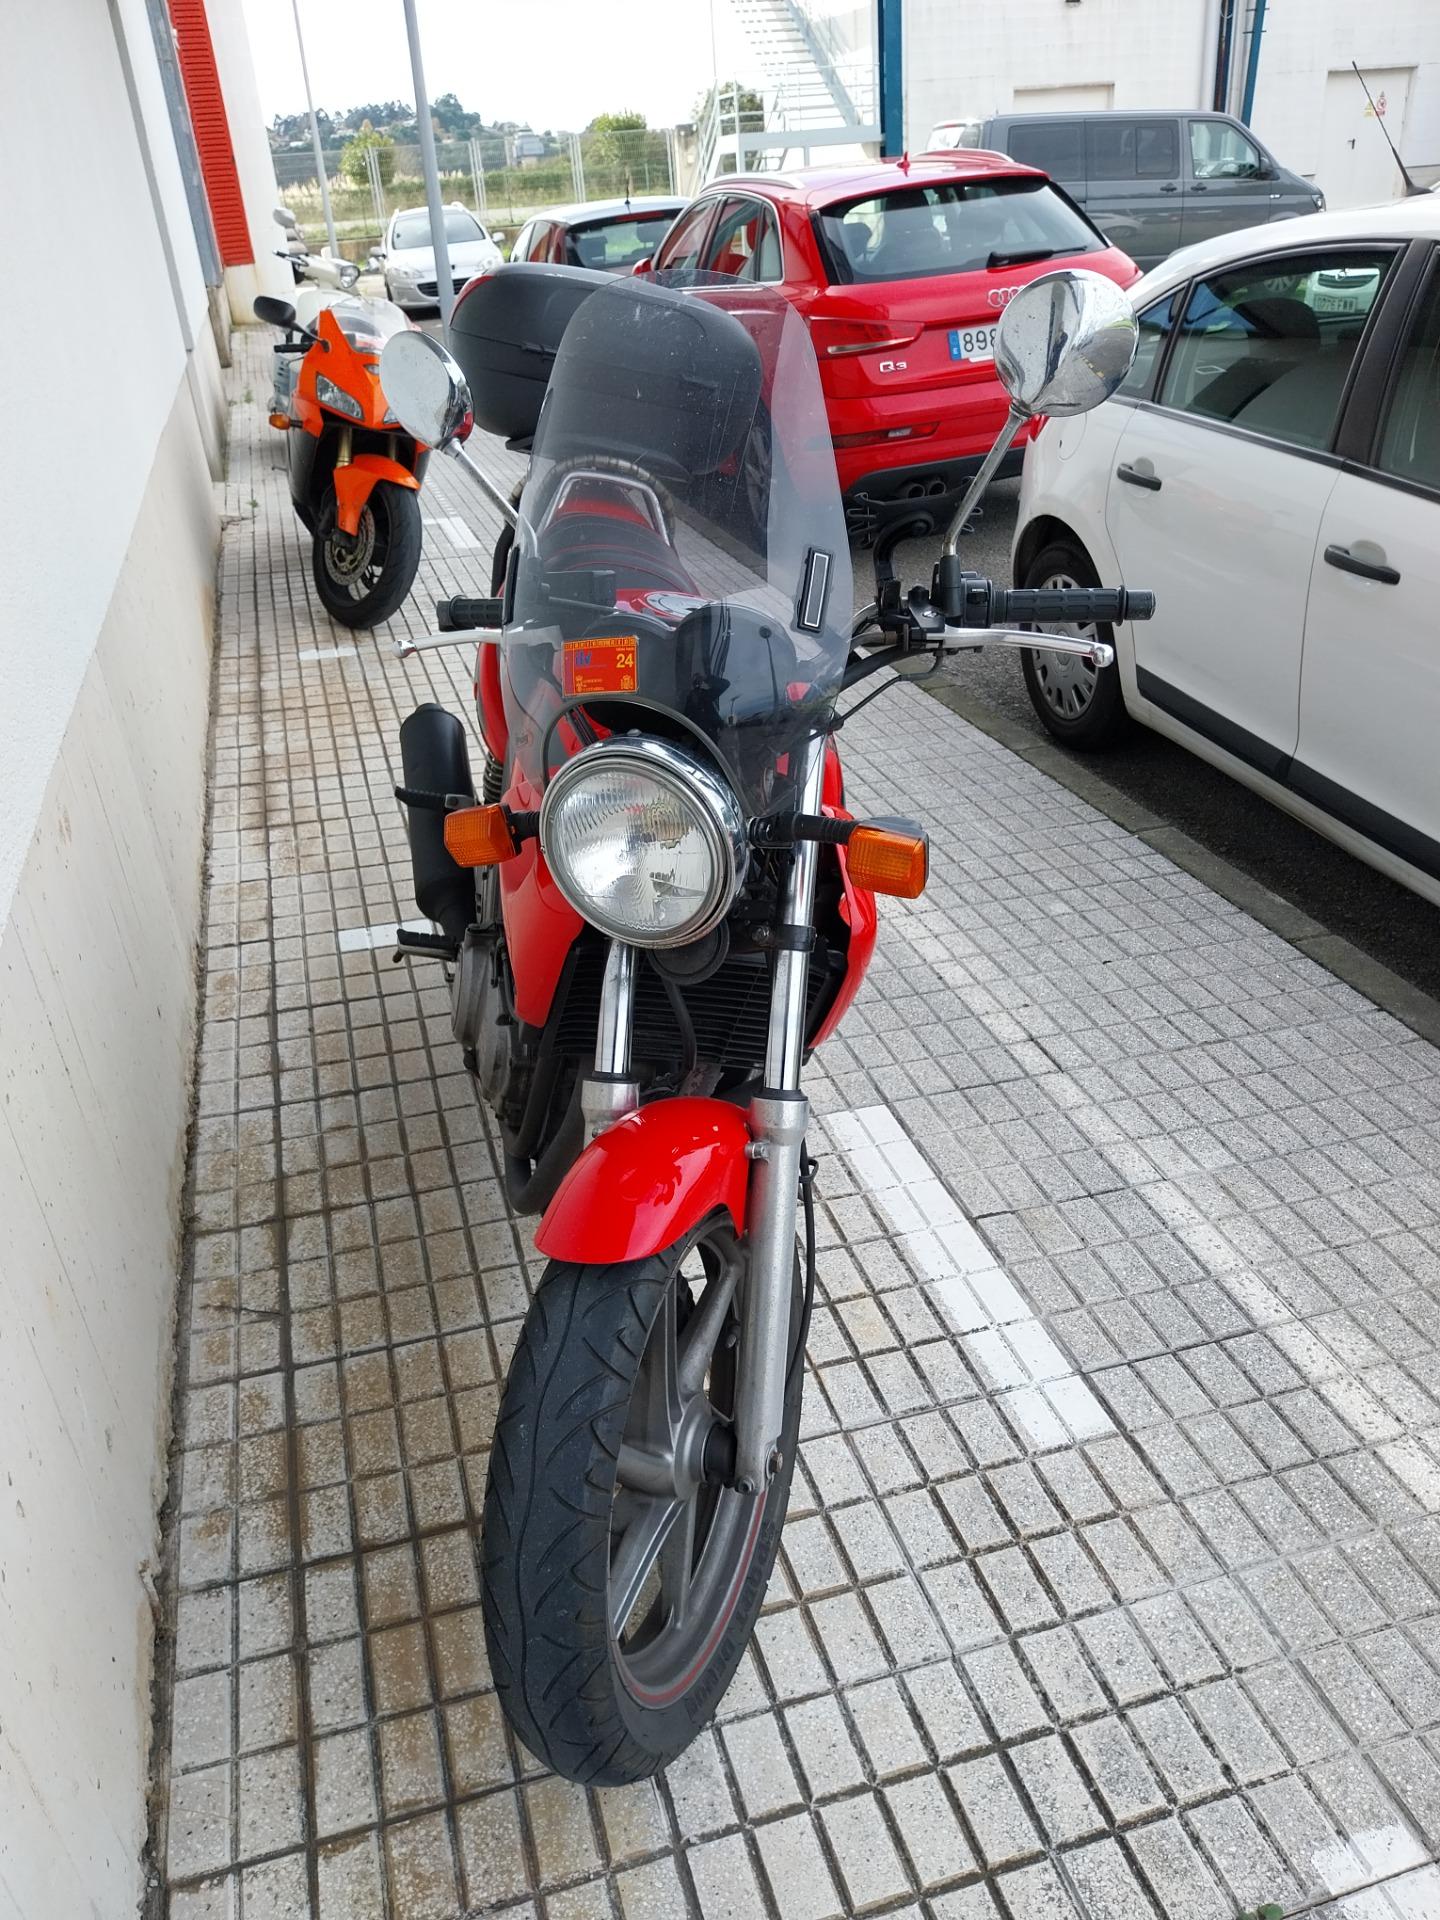 Foto 5 de motocicleta